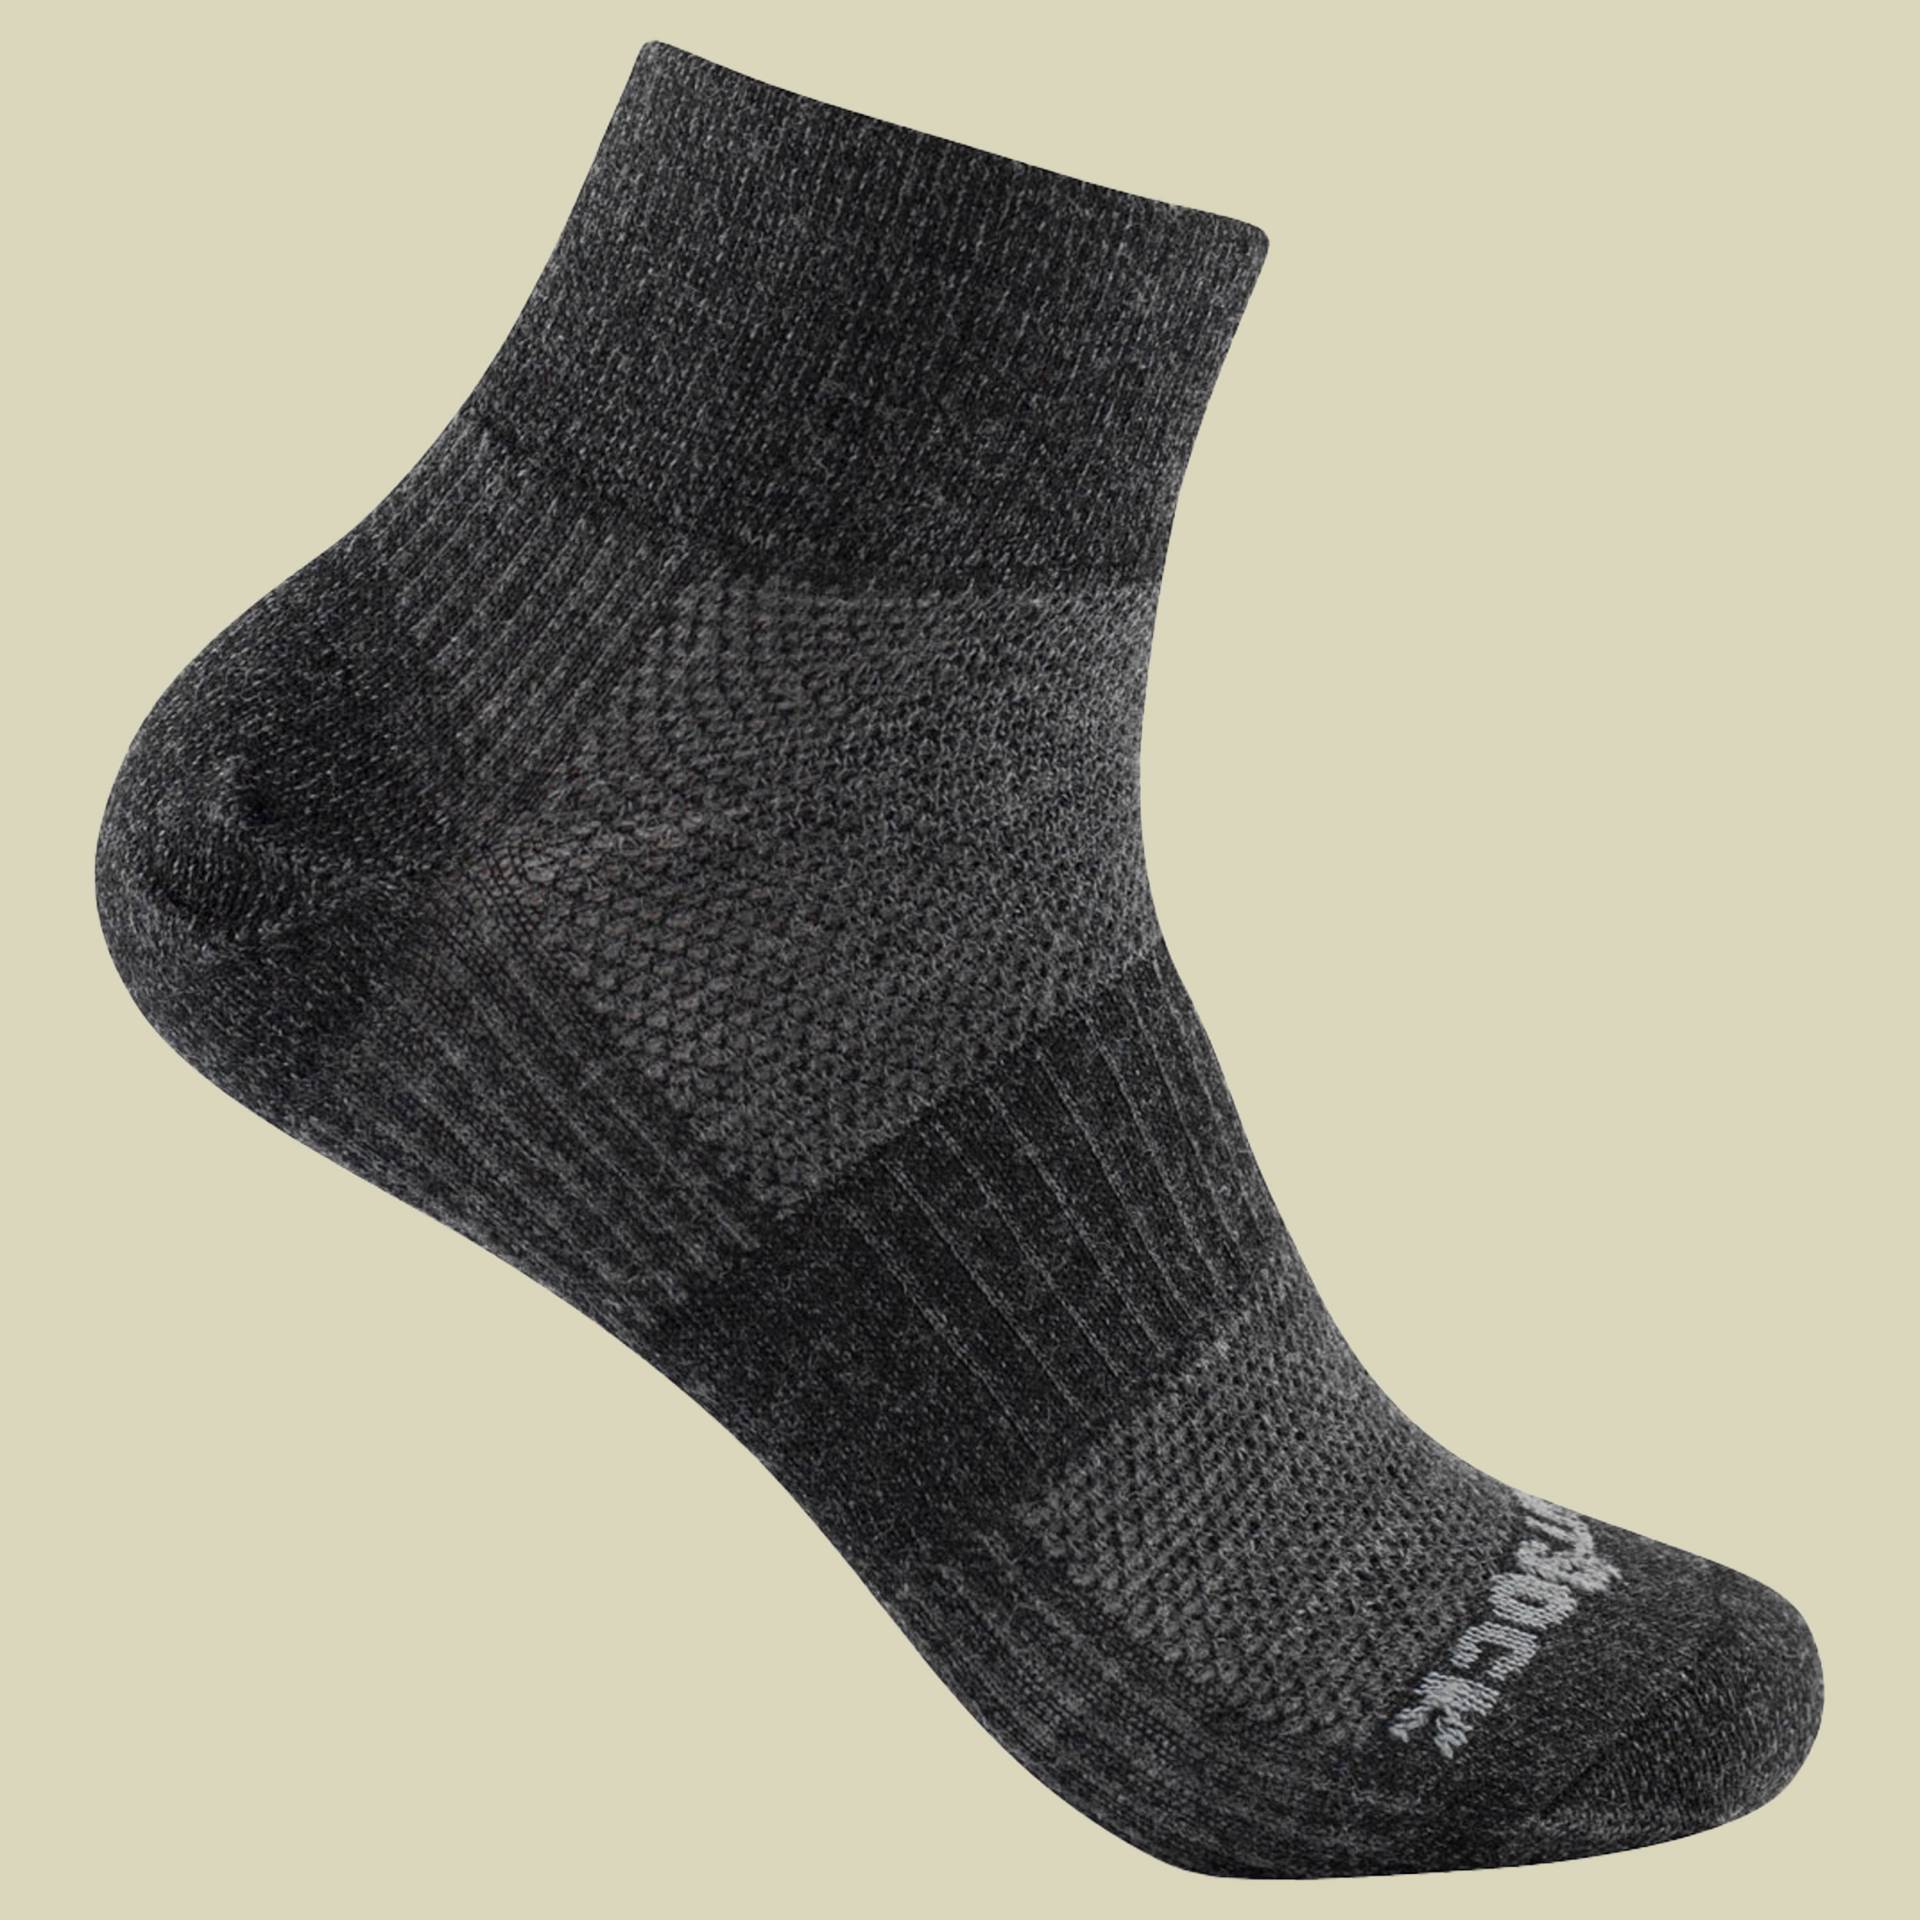 Merino Coolmesh II Quarter Größe 37,5-41 (M) Farbe grey black matt von Wrightsock